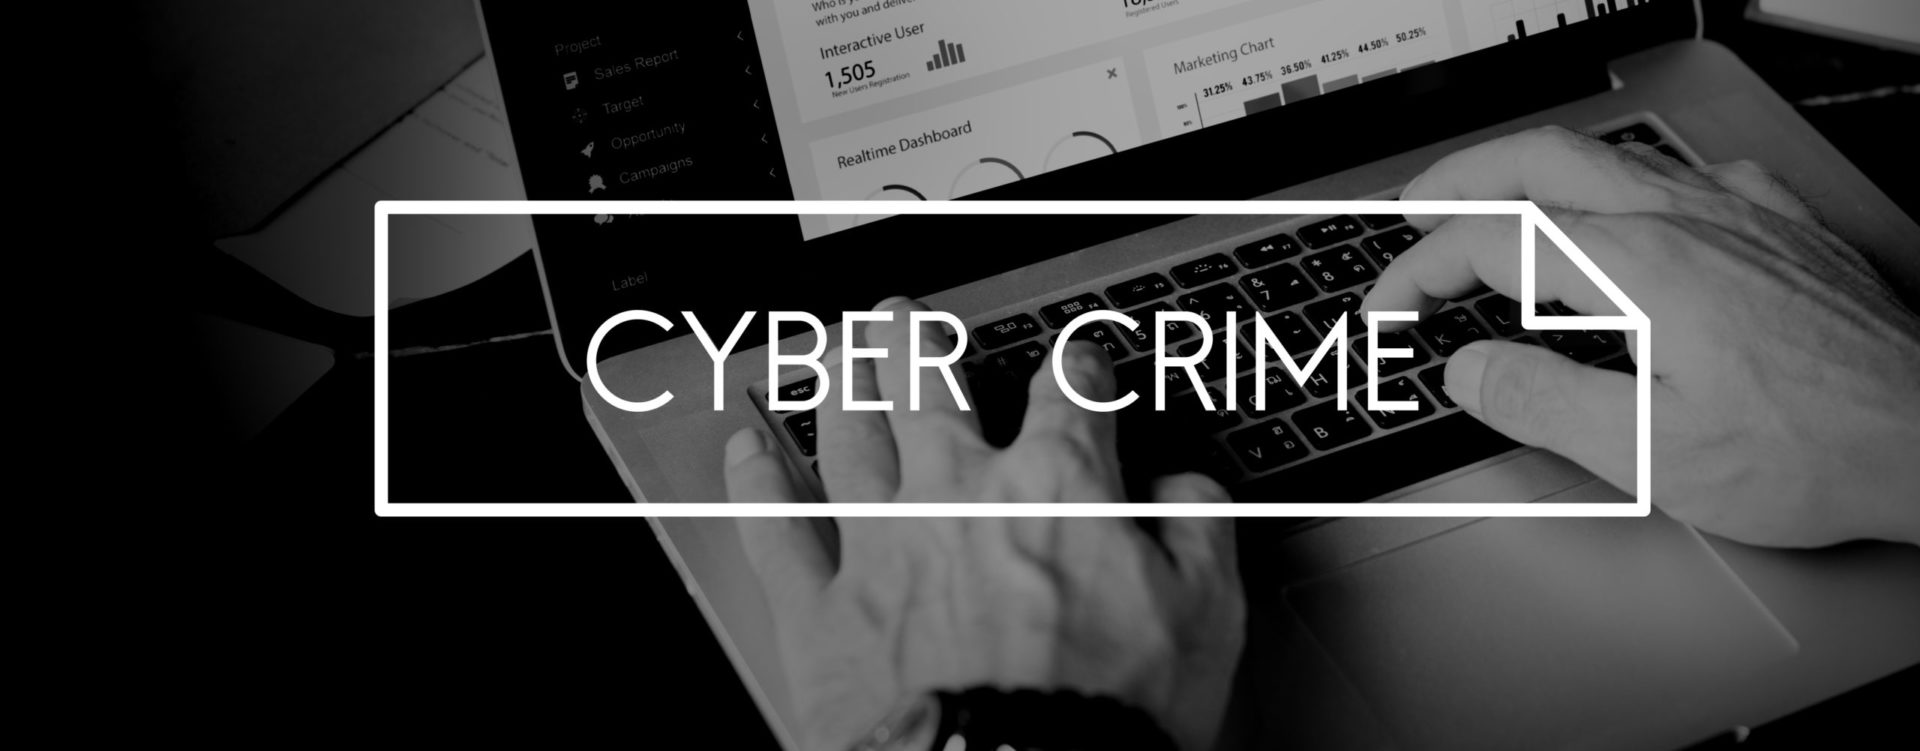 Cybercrimes - Cyber Crime Computer Attack Malware Concept